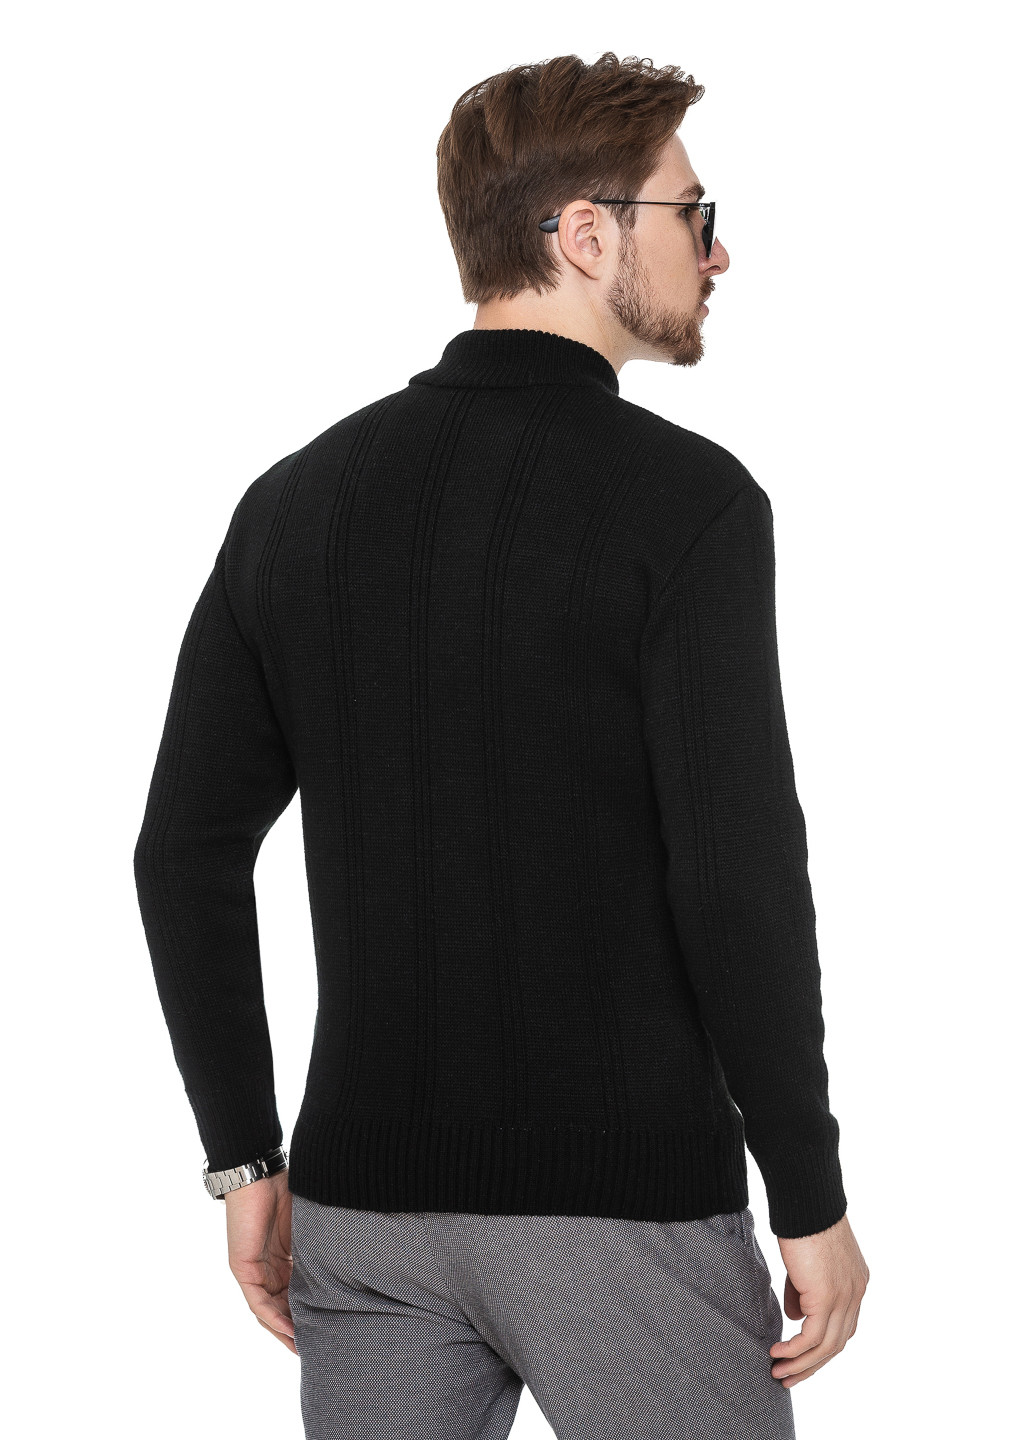 Чорний светр з коміром стійка «авіатор» SVTR